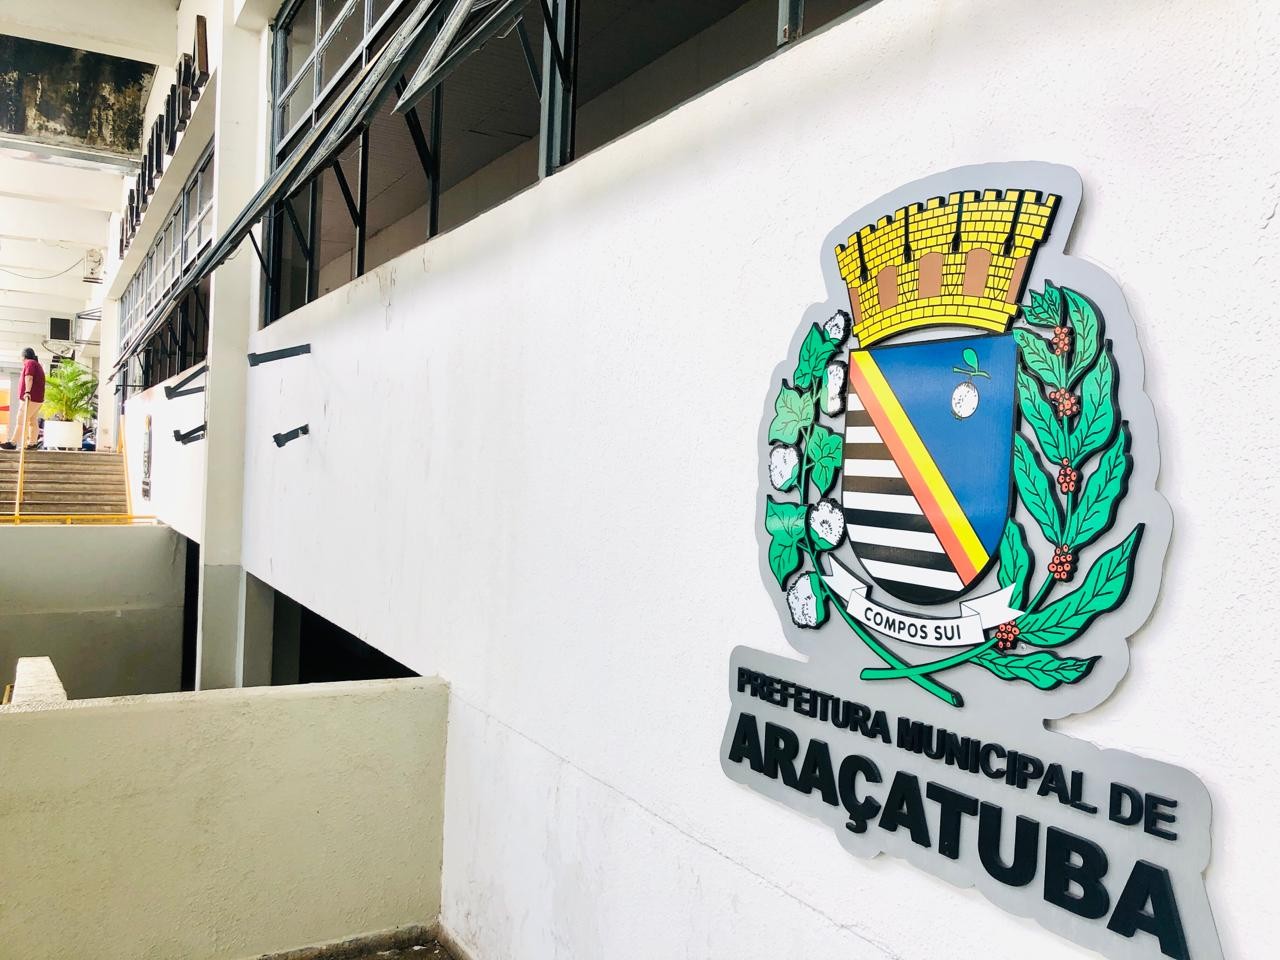 Prefeitura de Araçatuba abre processo seletivo para estagiários; veja como participar